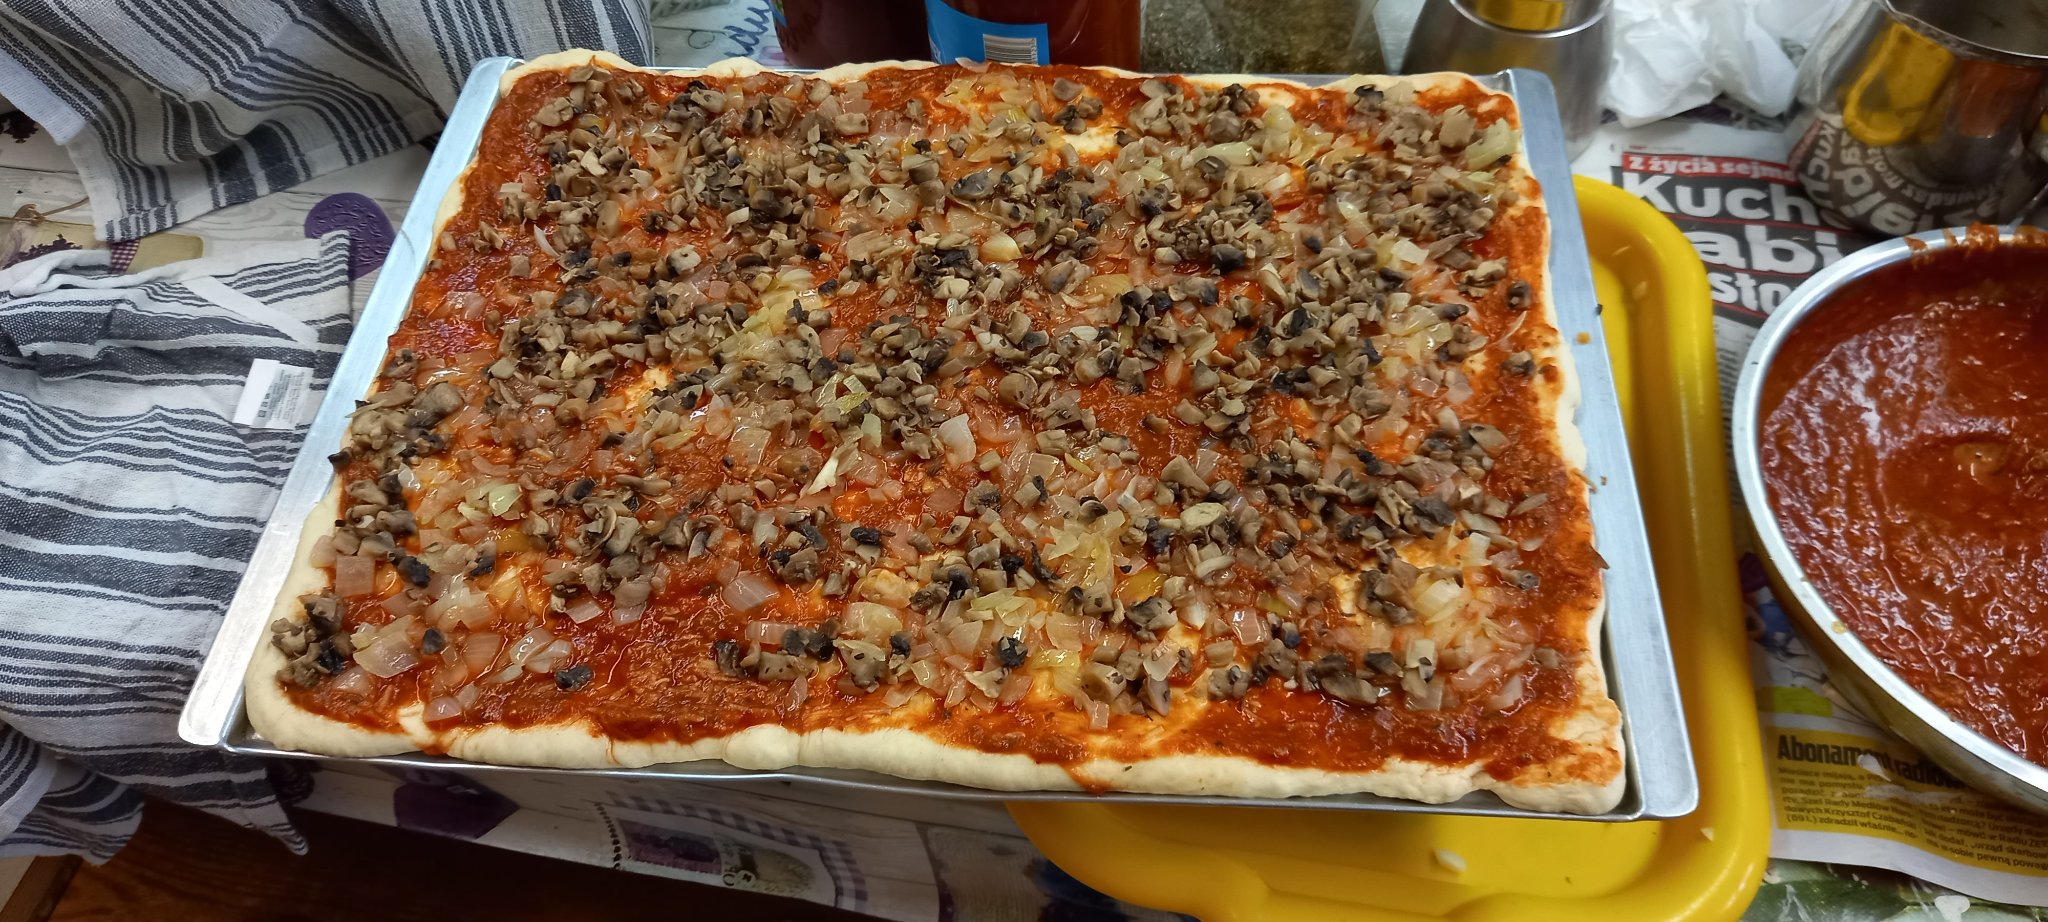 Na szerokiej metalowej blaszce leży duża przygotowana do spożycia pizza.